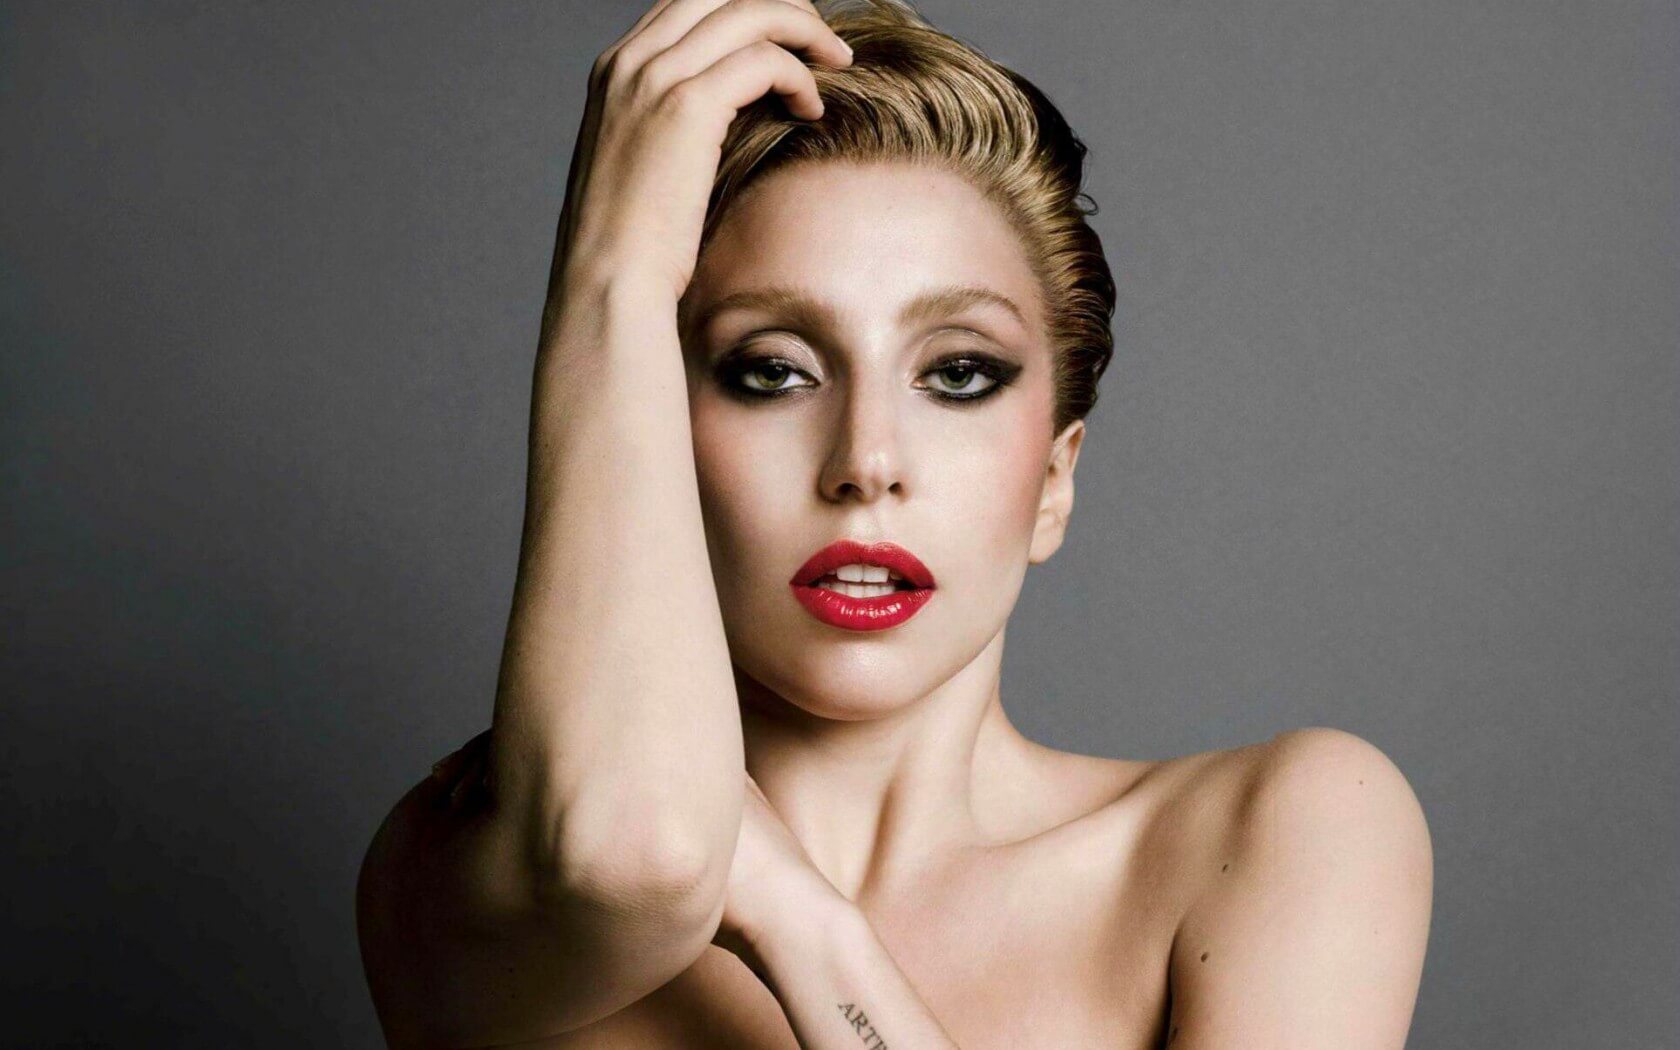 psicologiasdobrasil.com.br - 'A dor de ninguém deve passar despercebida': Lady Gaga escreve carta sobre estresse pós-traumático